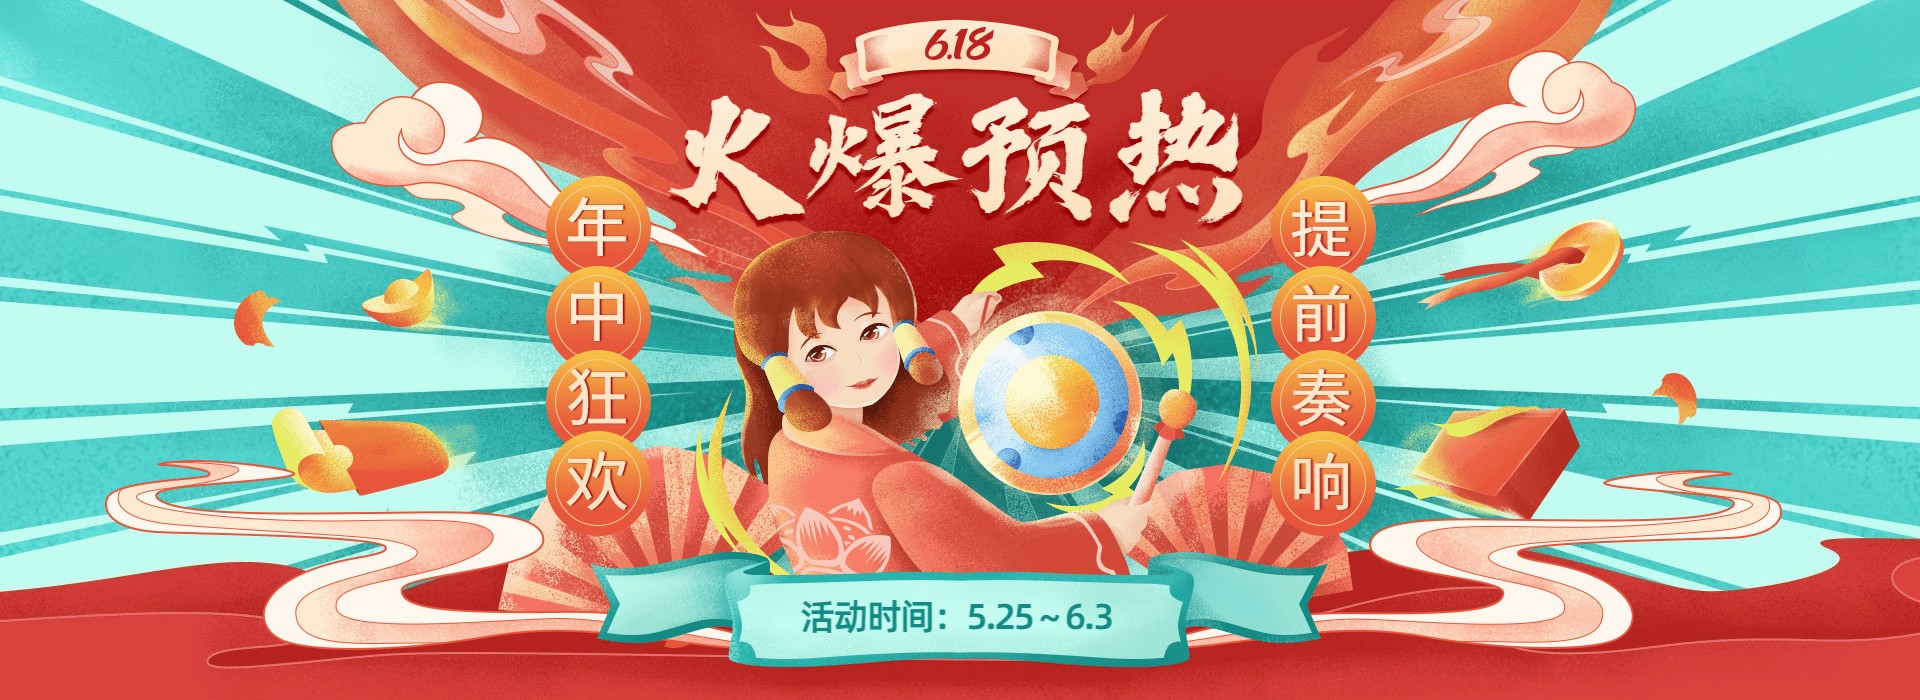 618预售手绘中国风促销海报banner